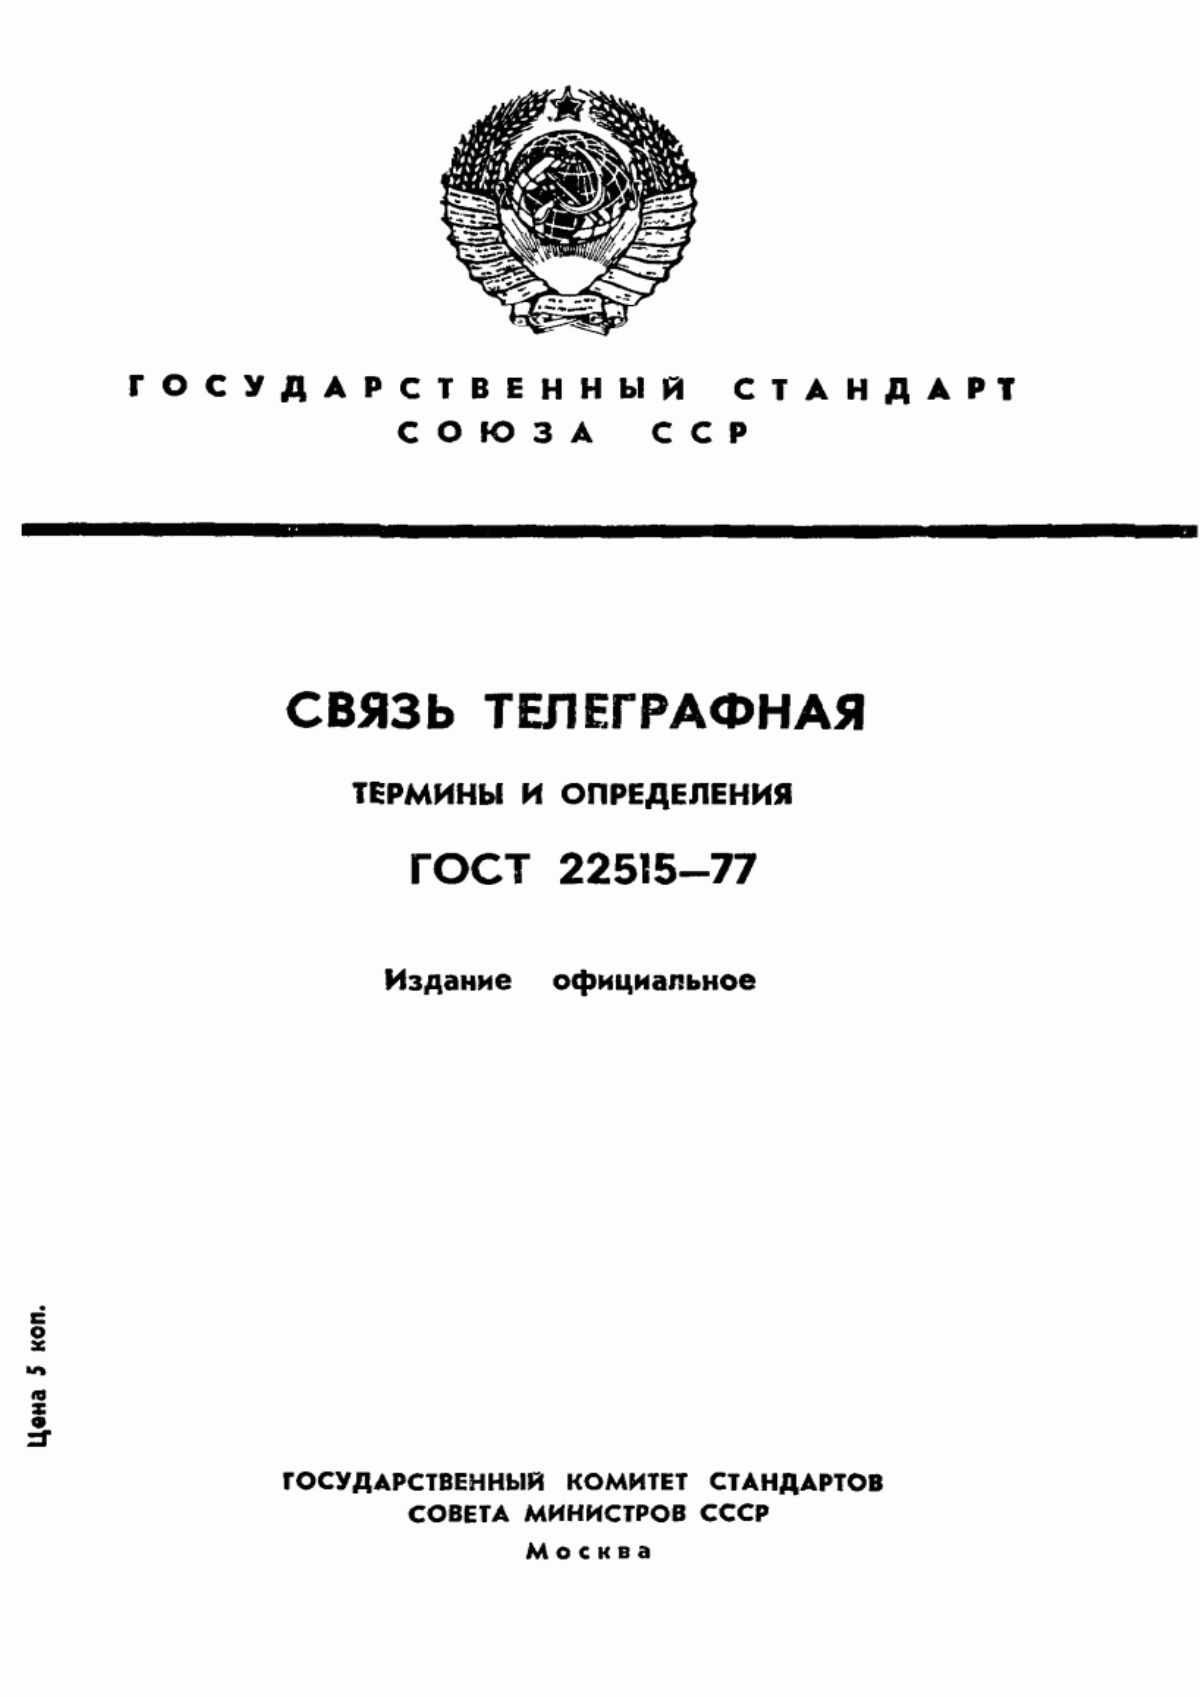 ГОСТ 22515-77 Связь телеграфная. Термины и определения